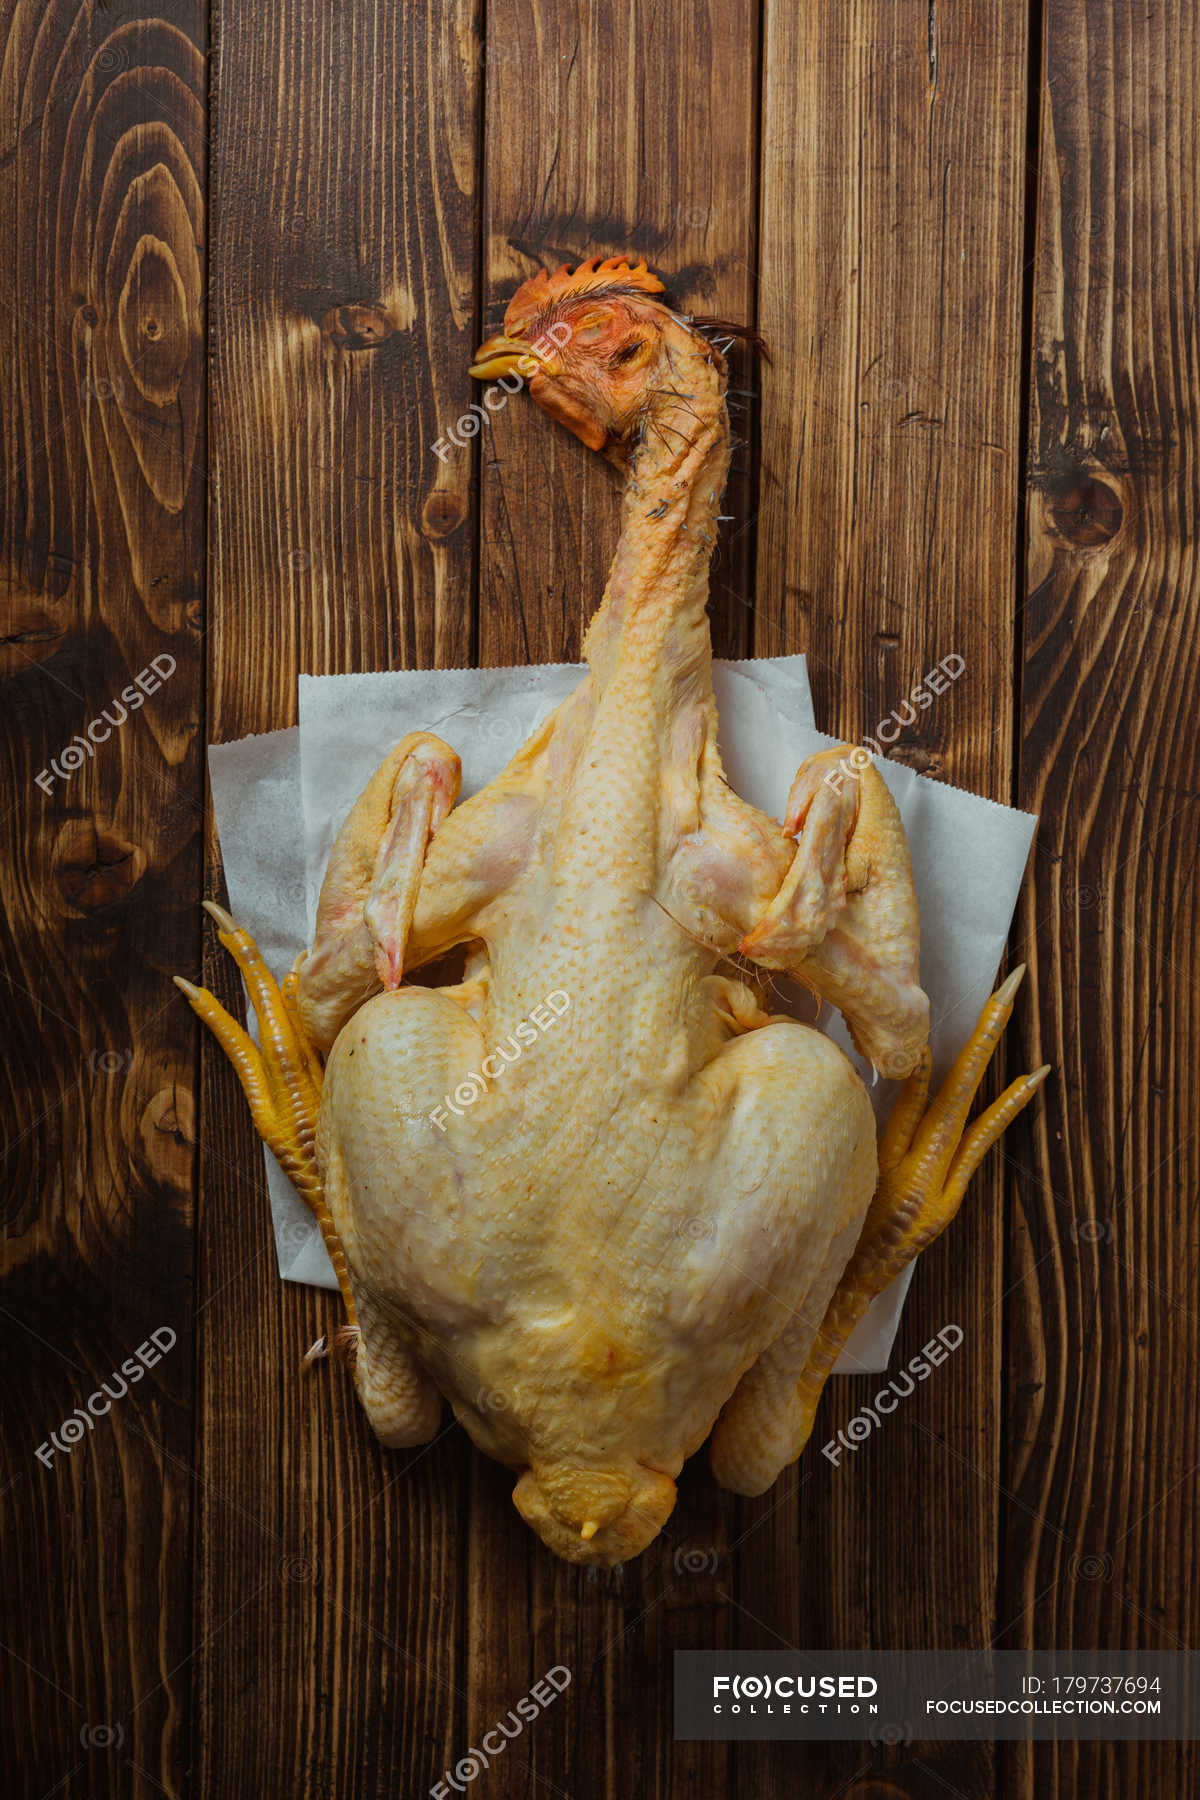 Pollo entero con cabeza — cocinero, Muerto - Stock Photo | #179737694